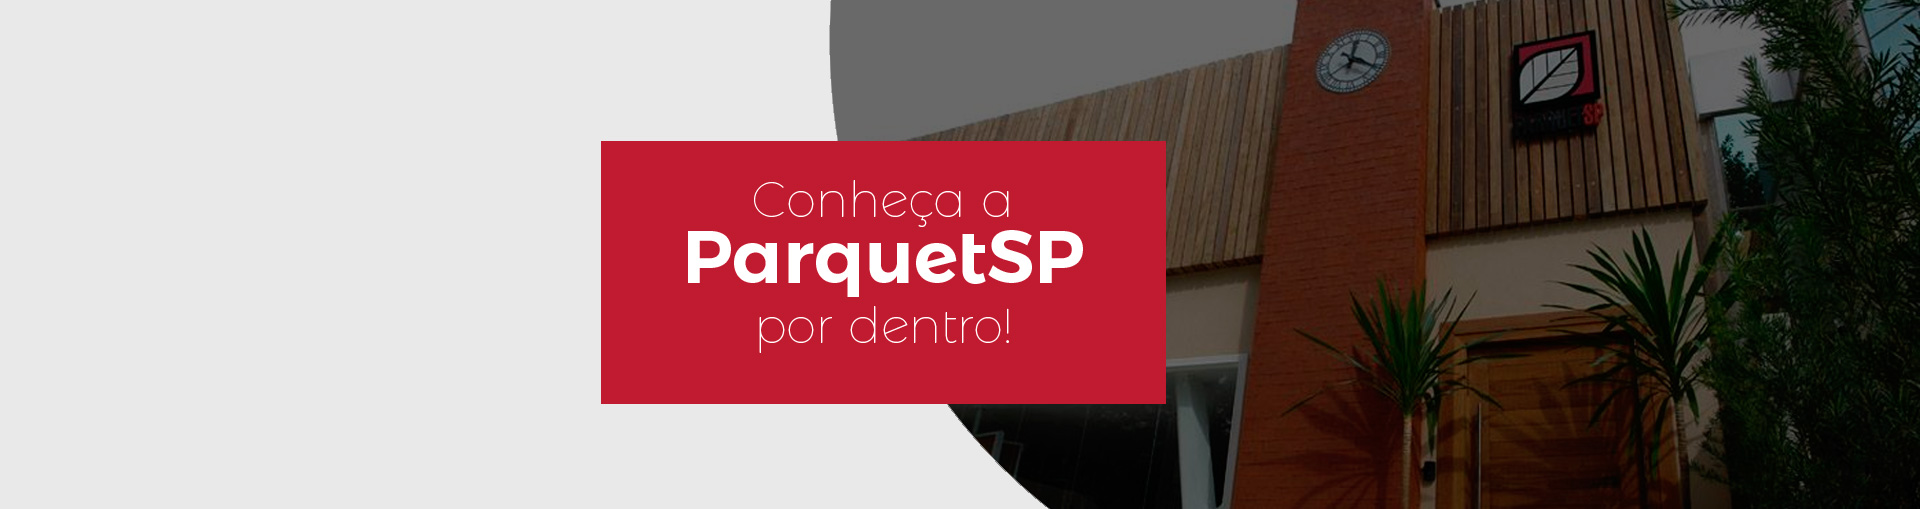 Conheça a ParquetSP Por Dentro | ParquetSP